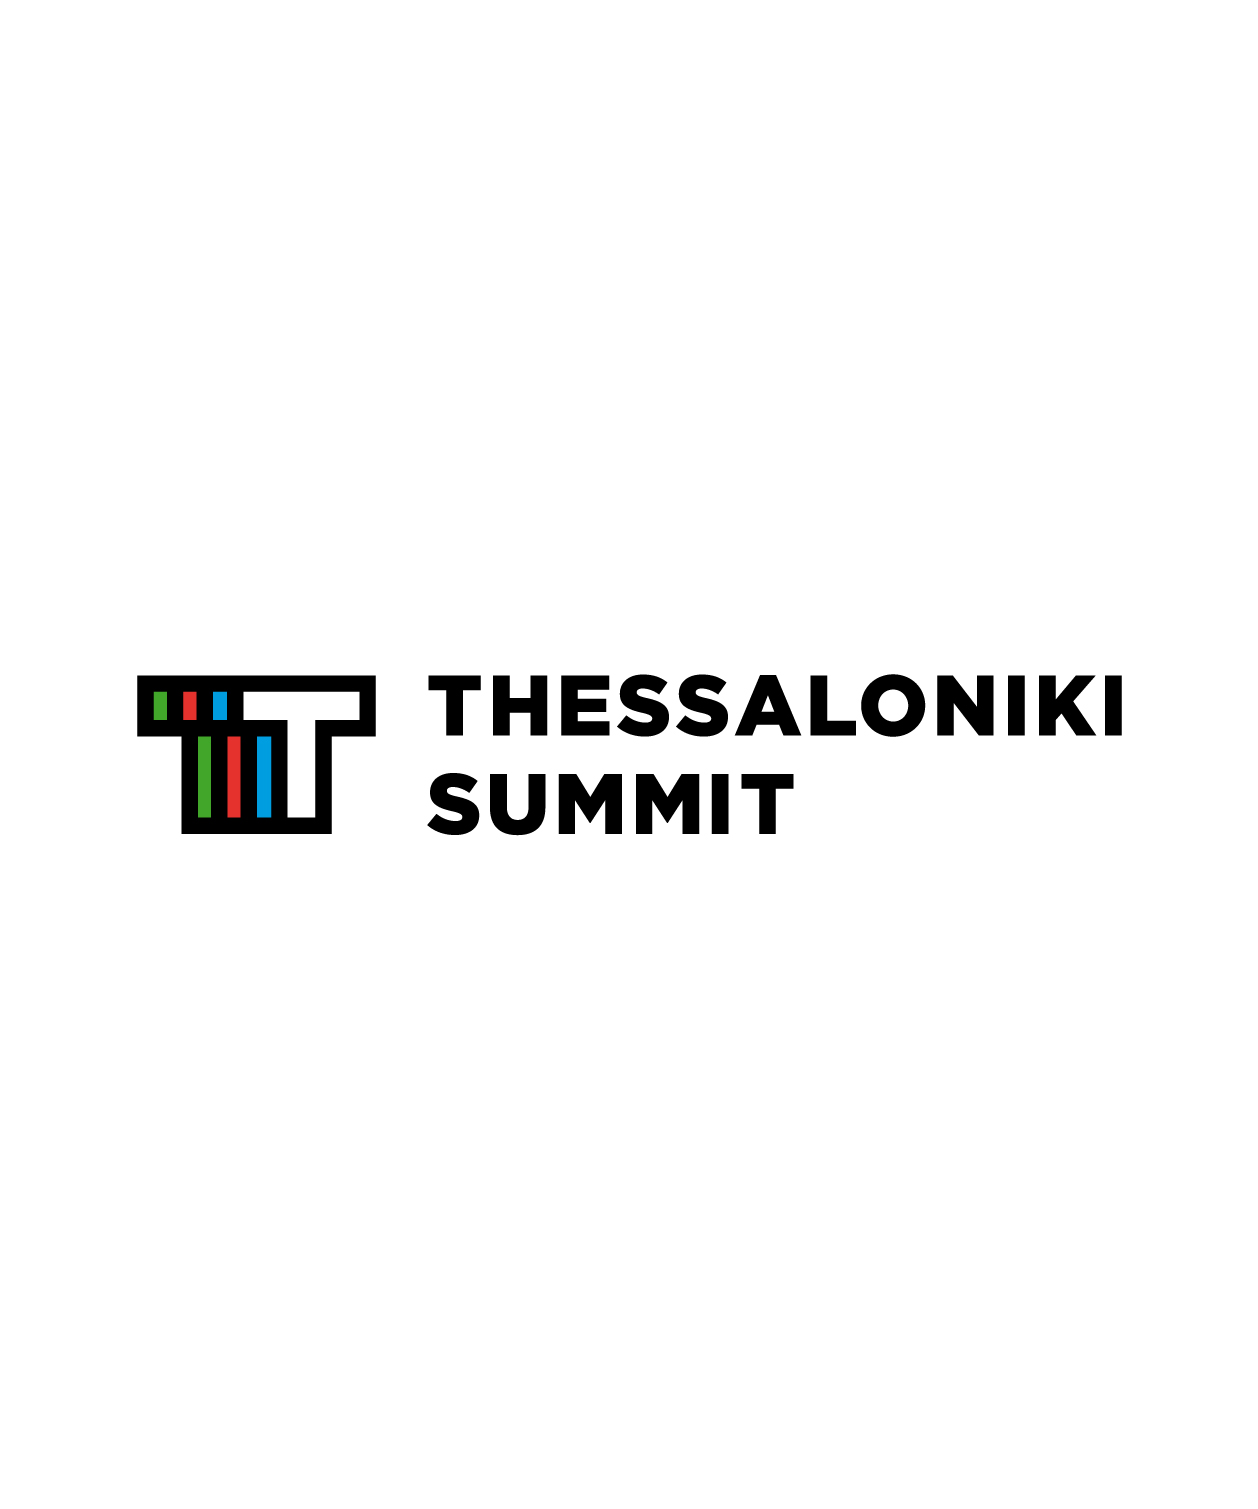 thessaloniki summit